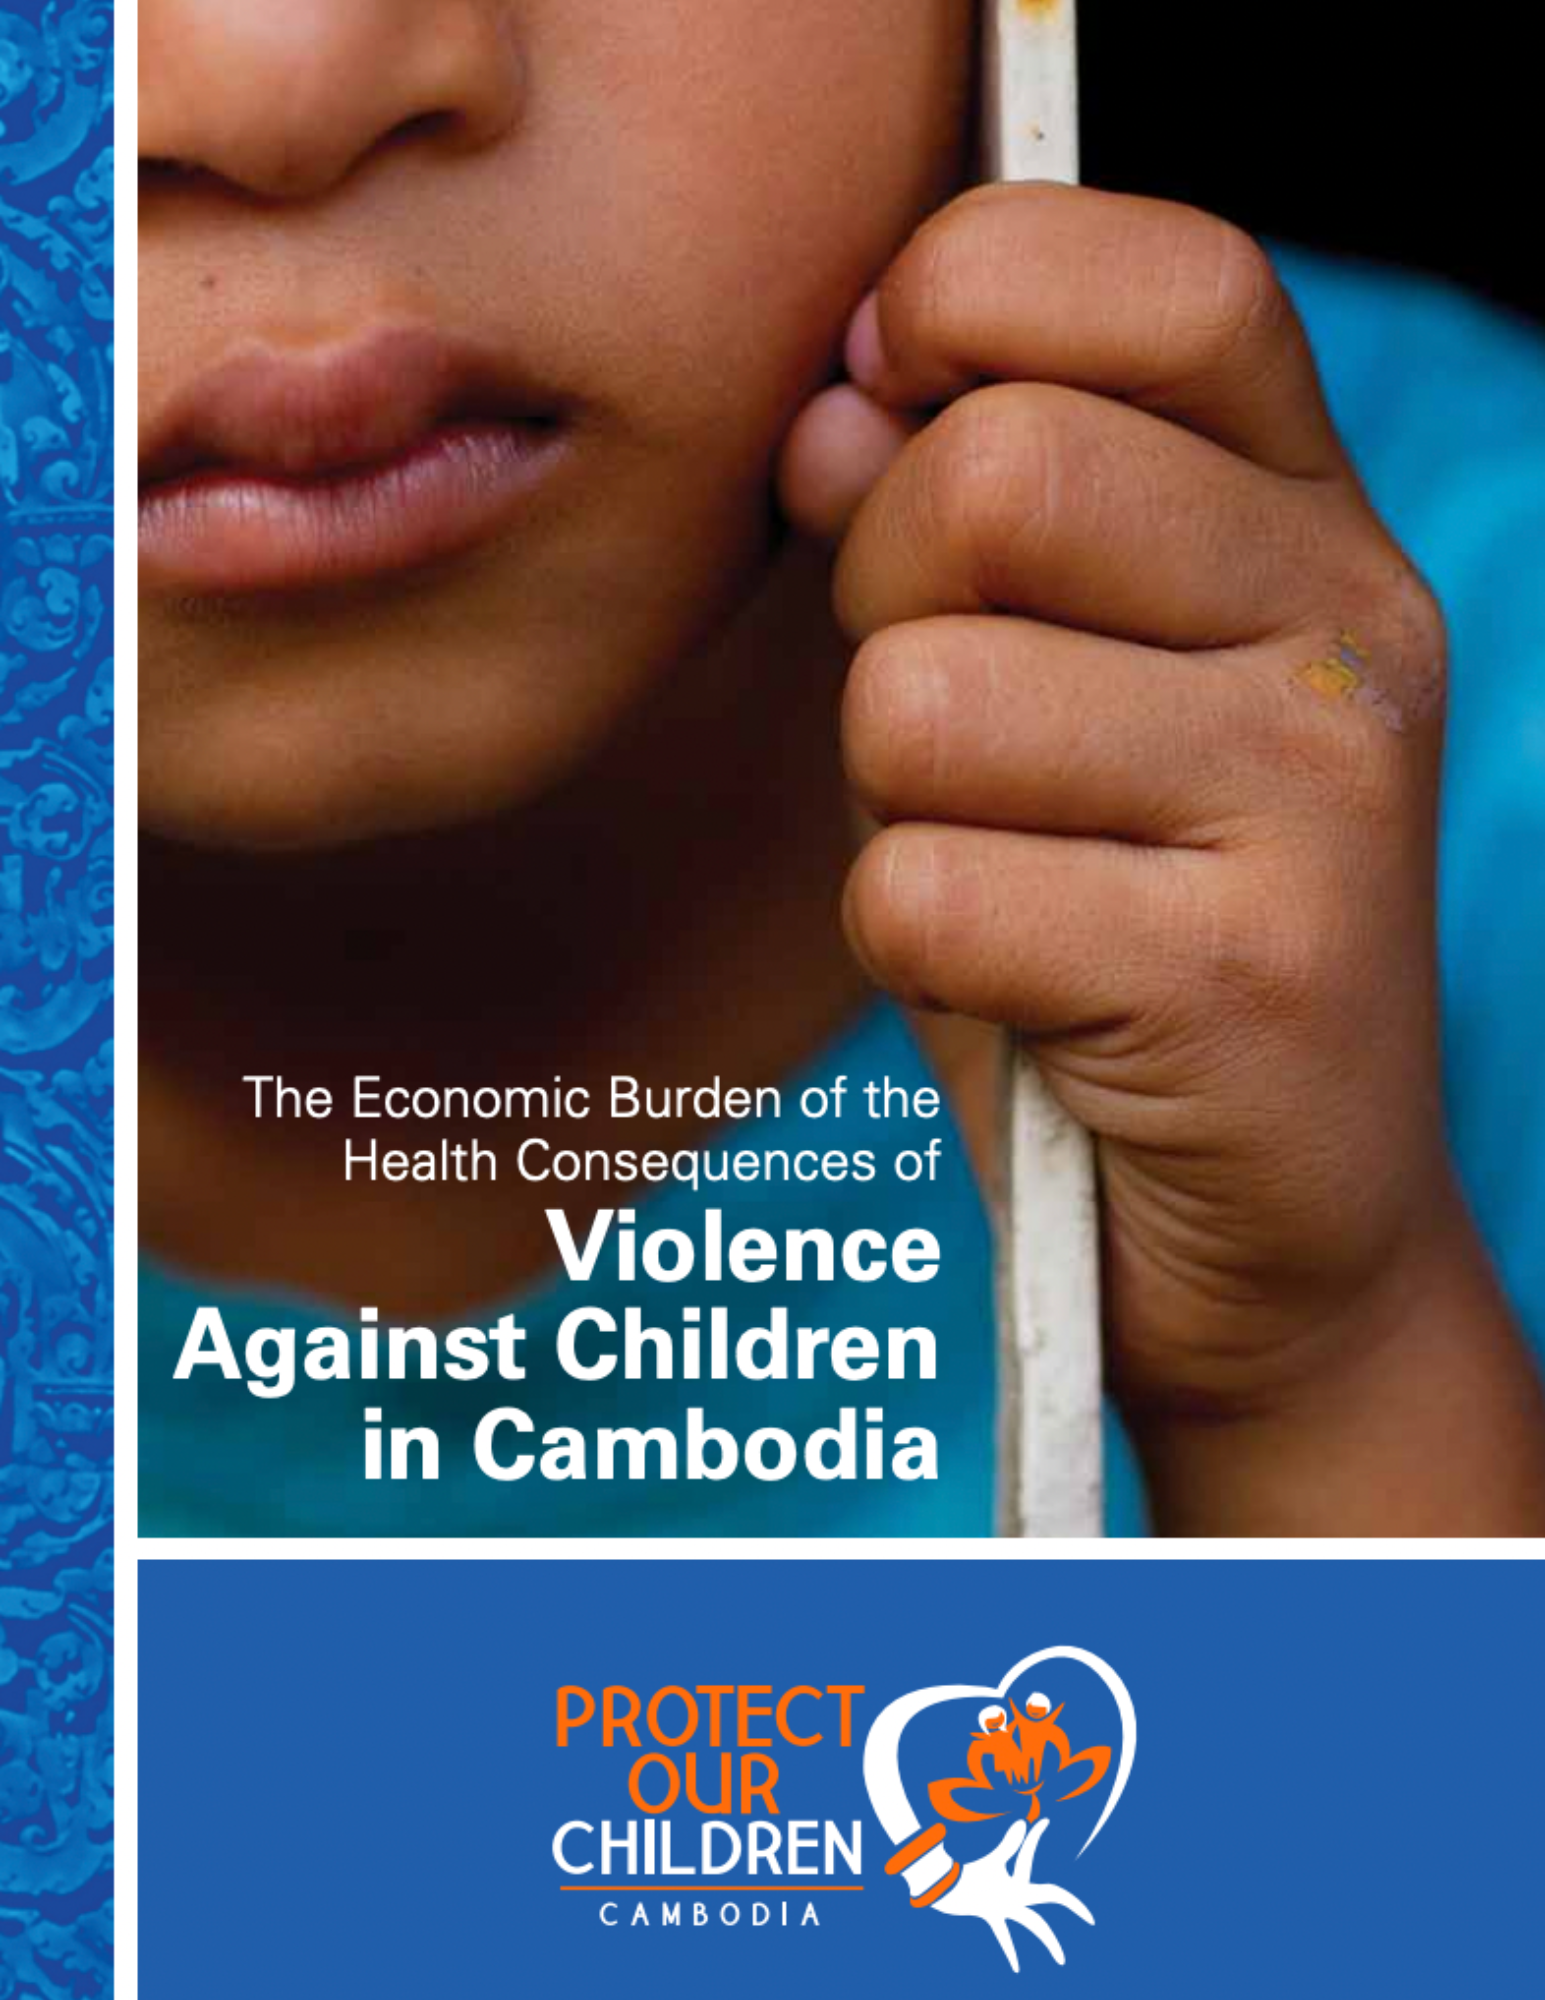 Cambodia economic burden of violence against children